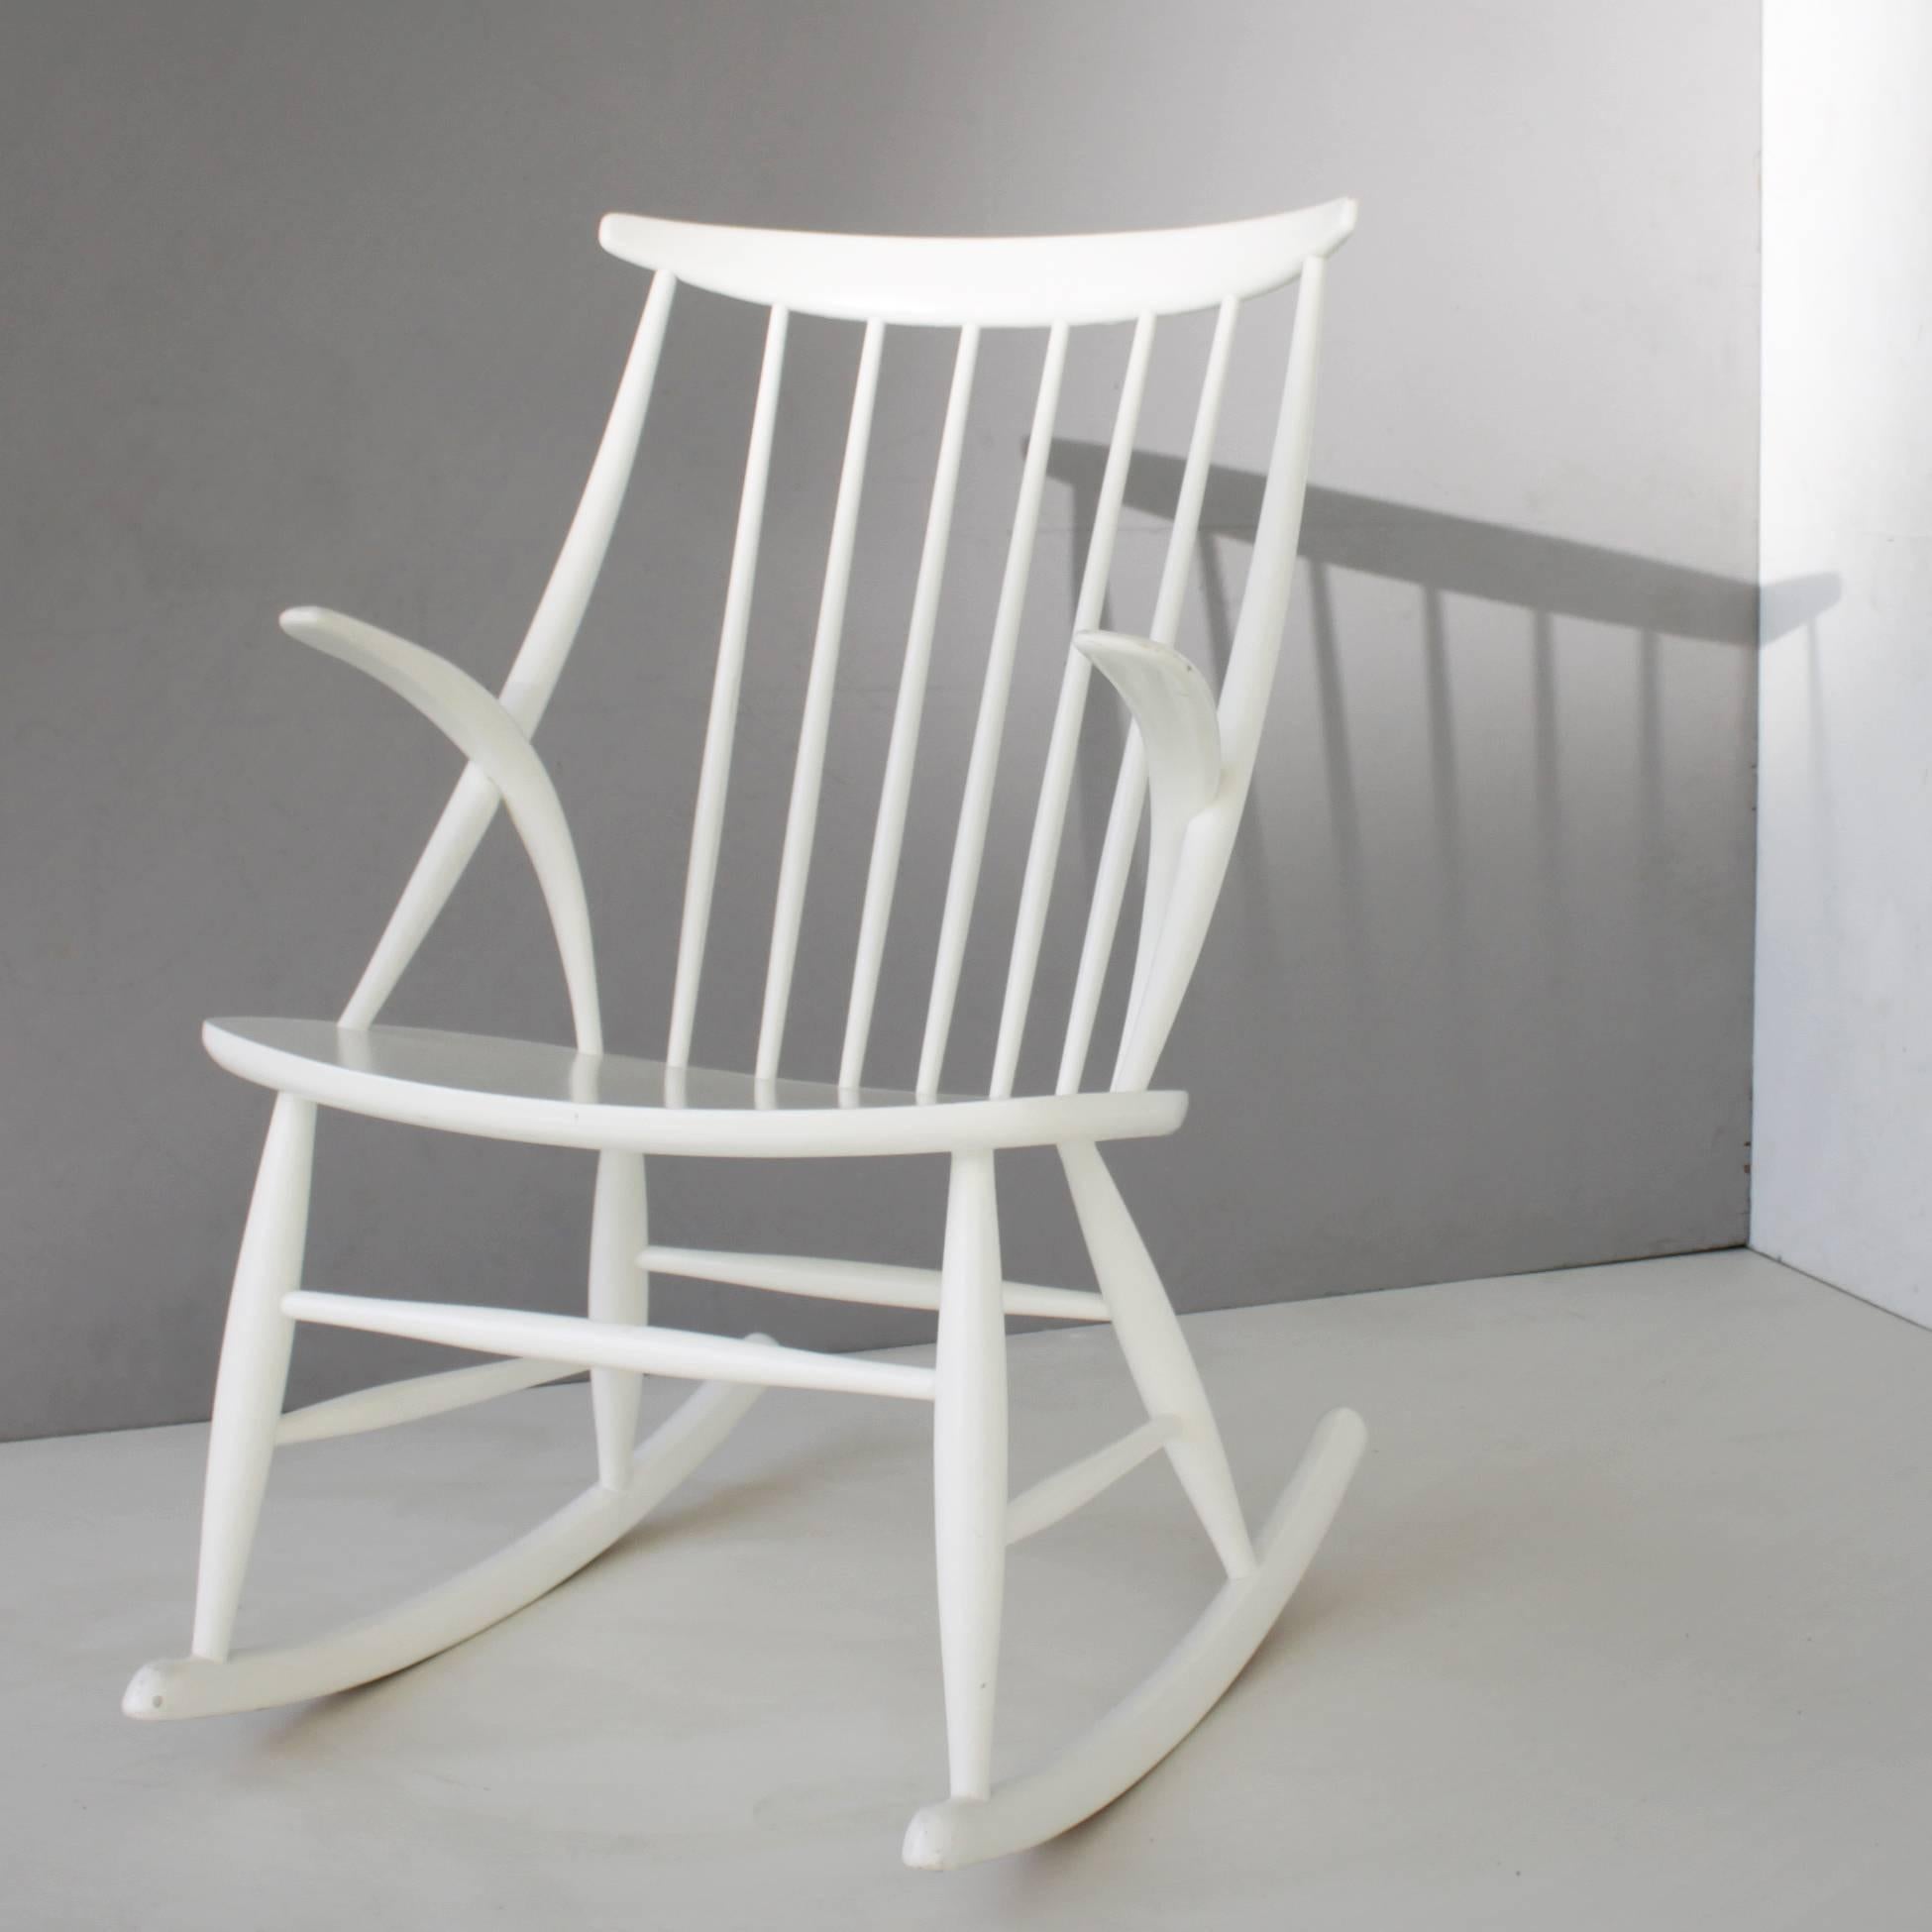 White rocking chair by Illum Wikkelso (Wikkelsø) for N. Eilersen, Denmark.